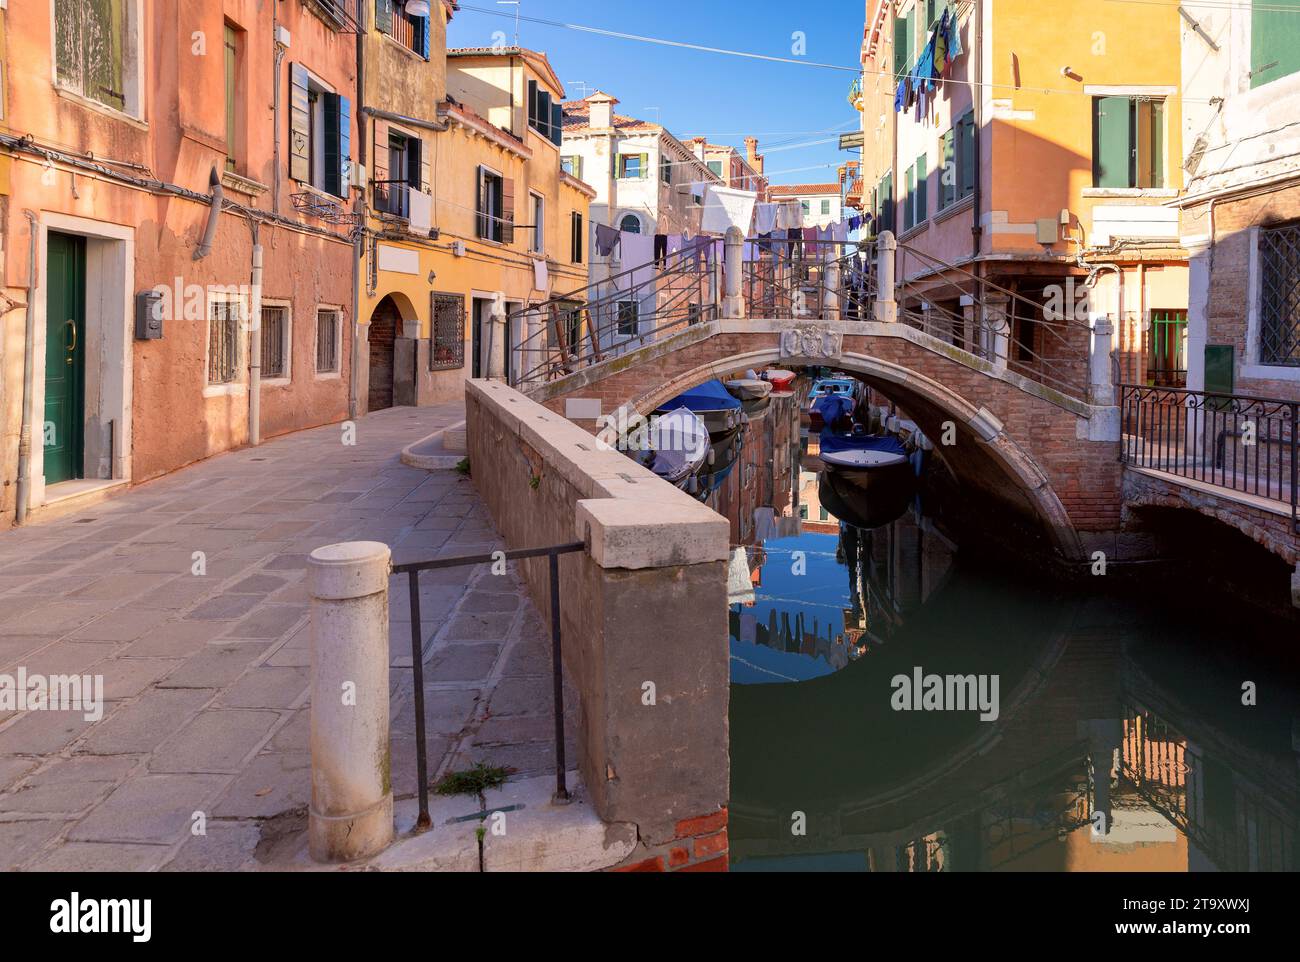 Tradizionali case in pietra colorata lungo il canale in una mattinata di sole. Venezia. Italia. Foto Stock